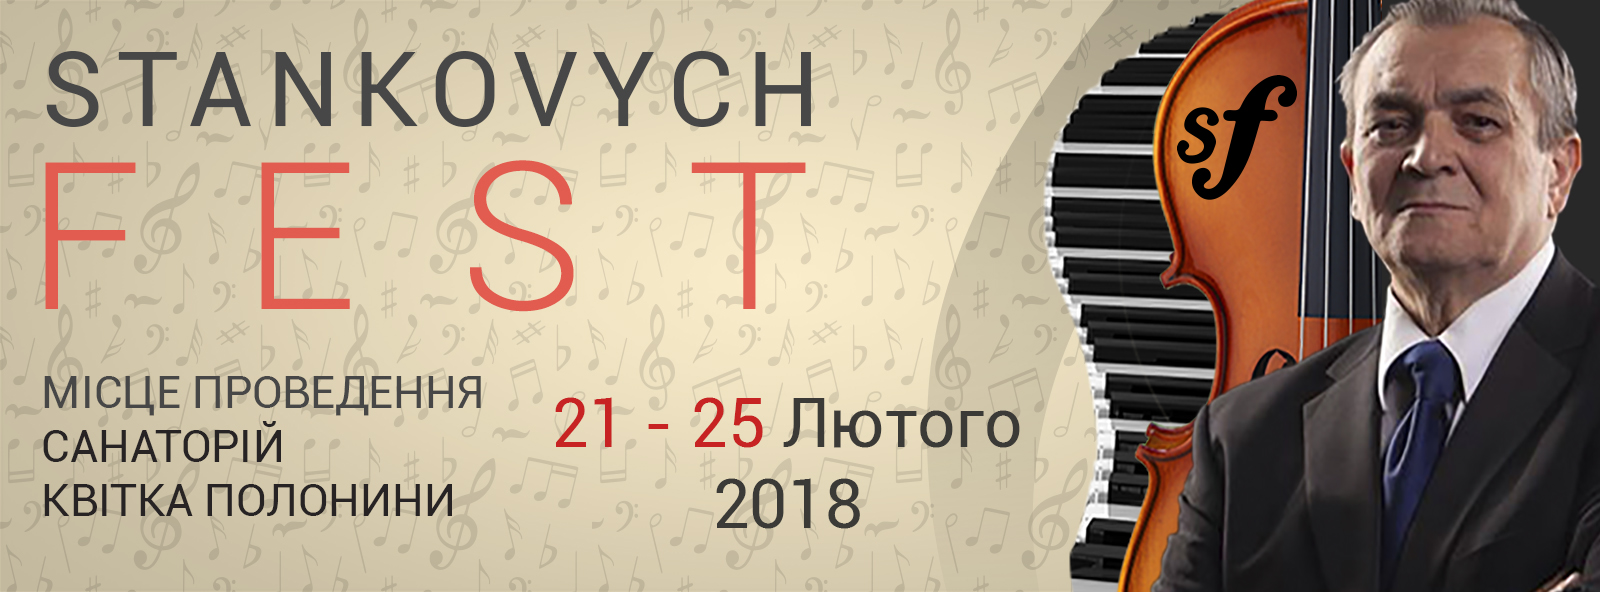 На Свалявщині відбудеться конкурс-фестиваль "Stankovych fest"